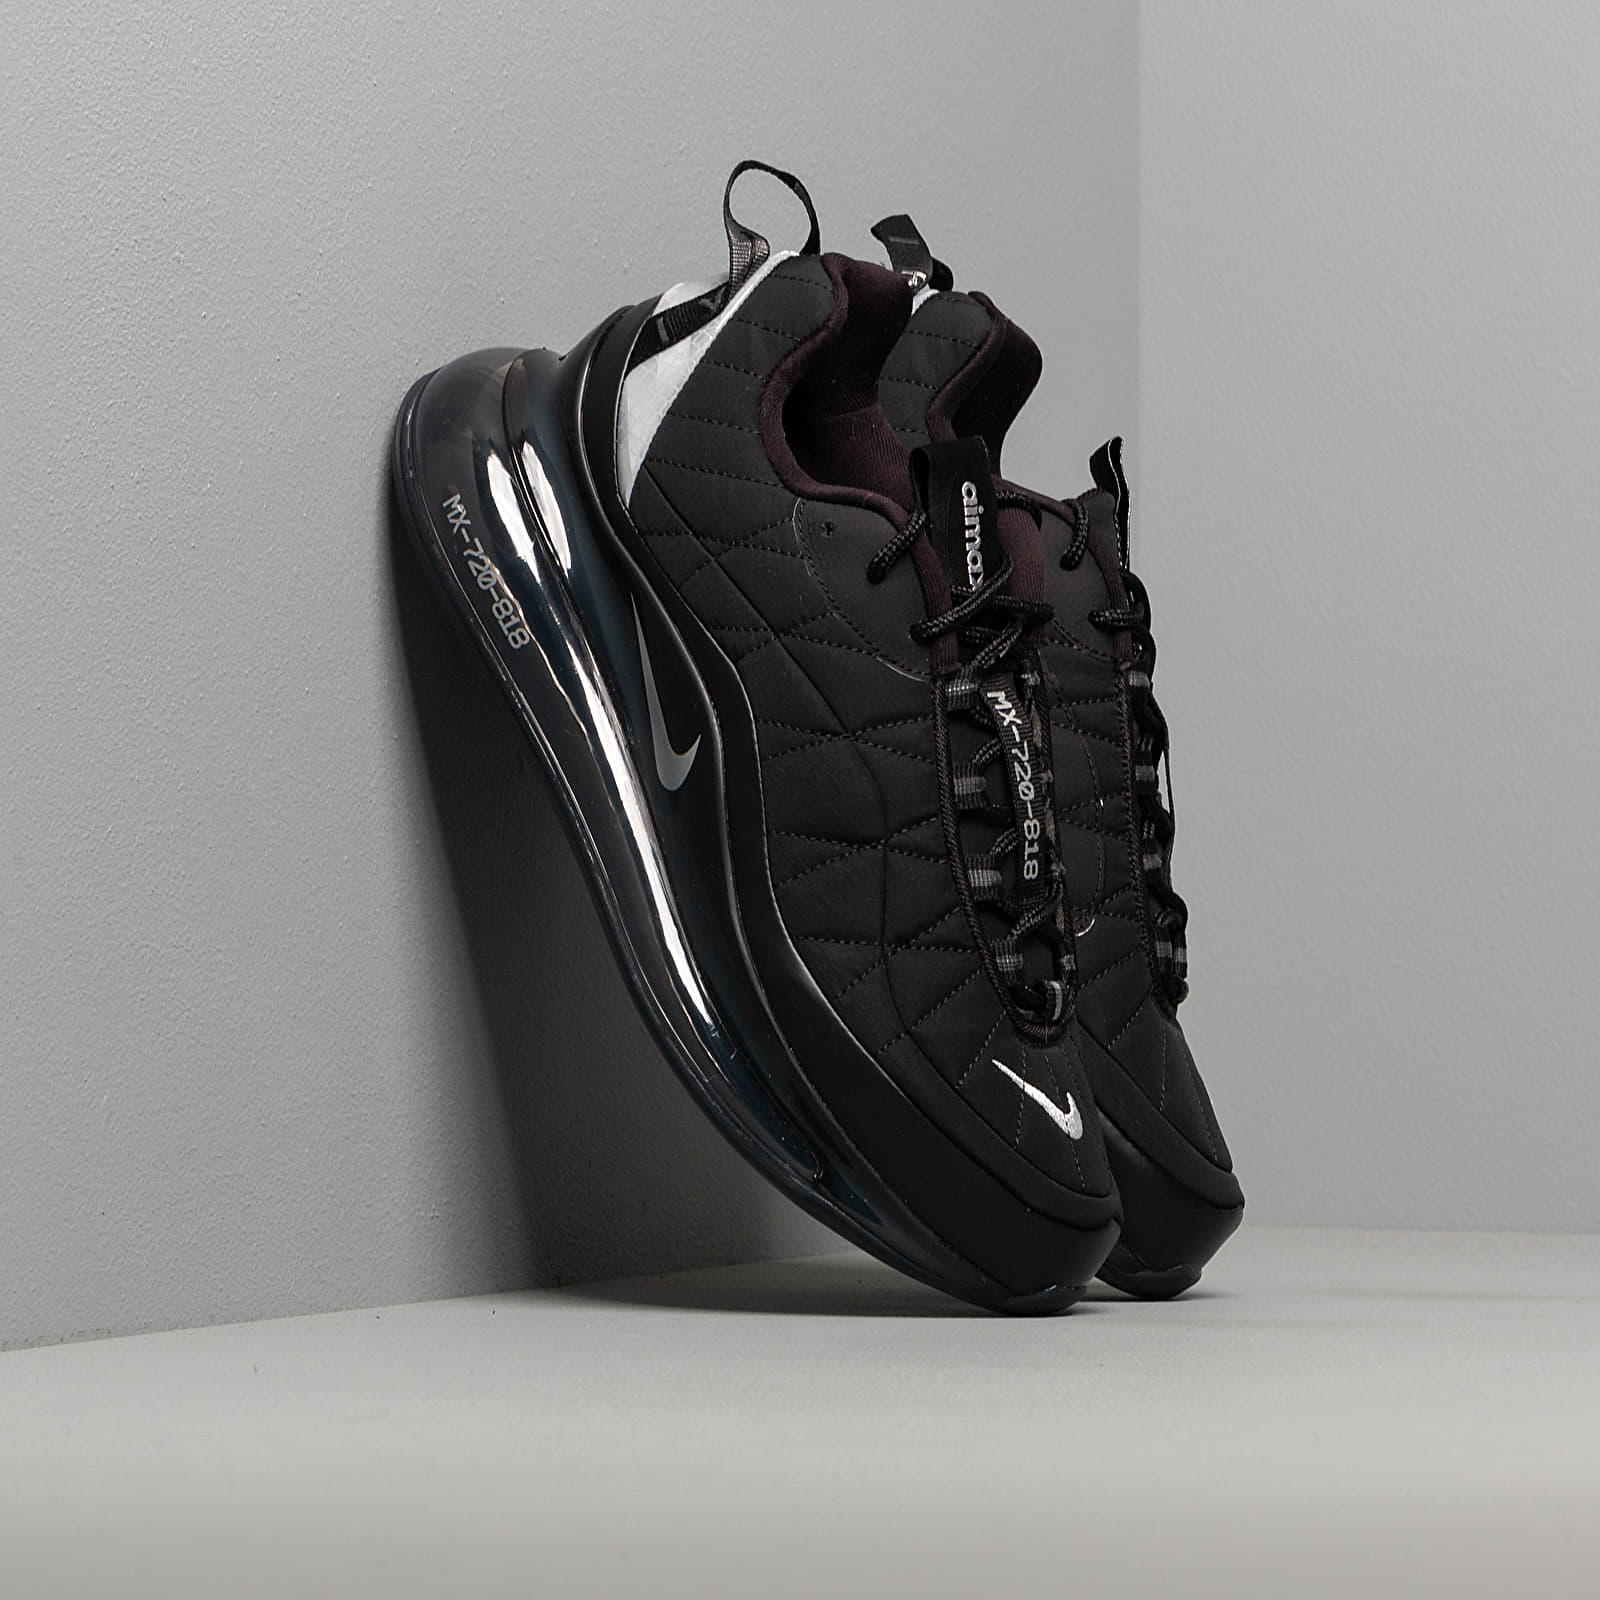 Nike W Mx-720-818 Black/ Metallic Silver-Black-Anthracite